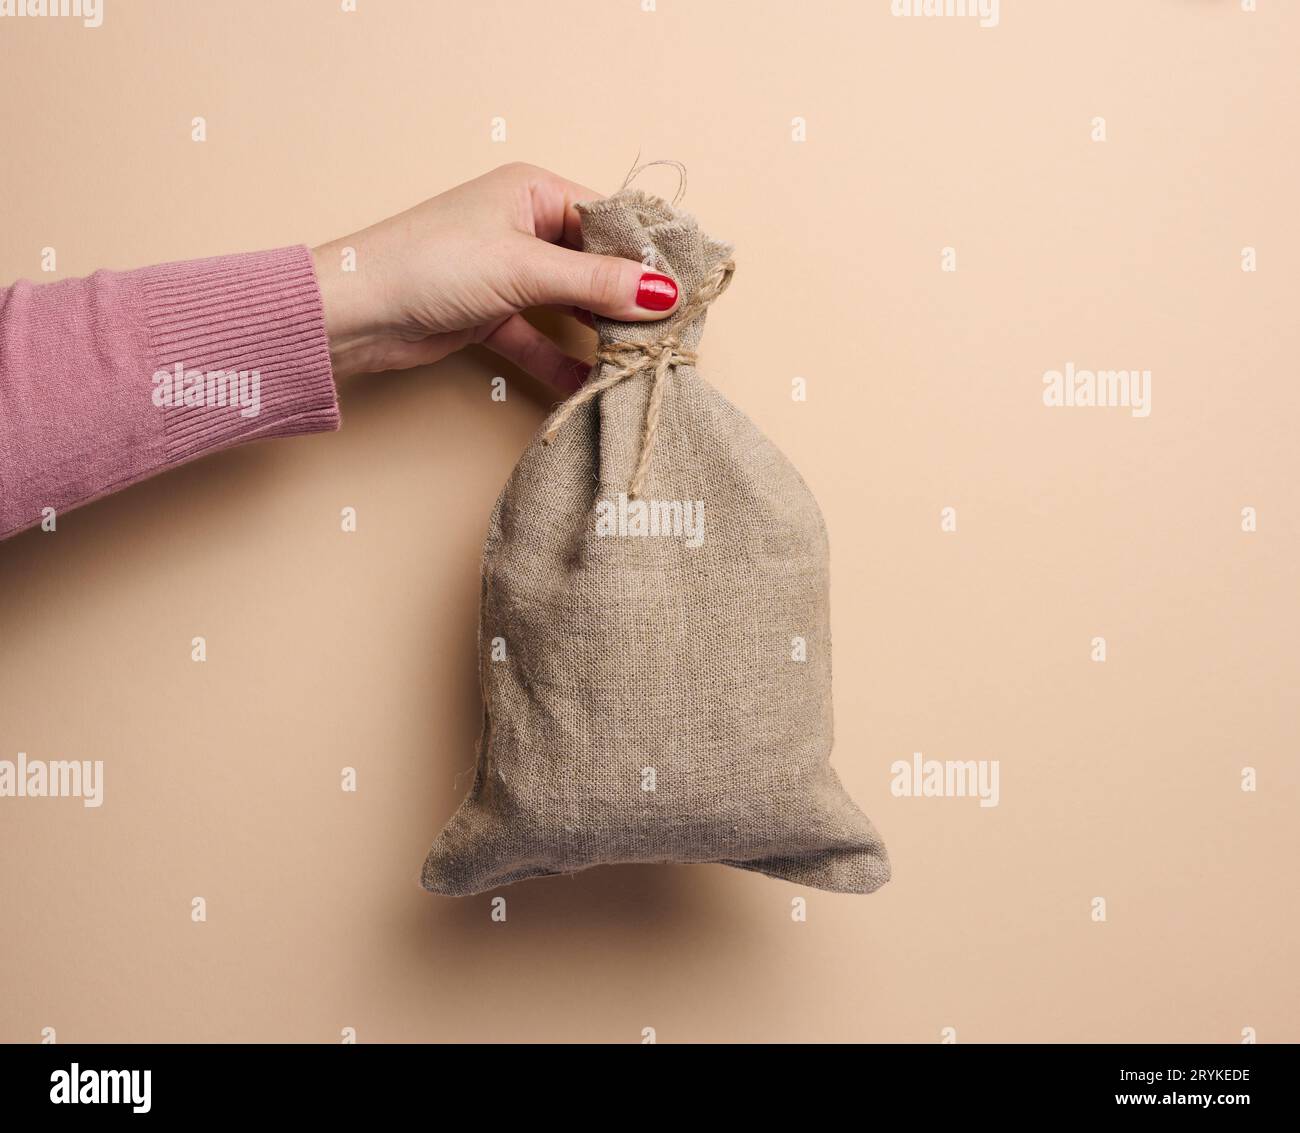 Una mano della donna tiene una borsa di tela su uno sfondo beige, il concetto di un sussidio, aiuto Foto Stock